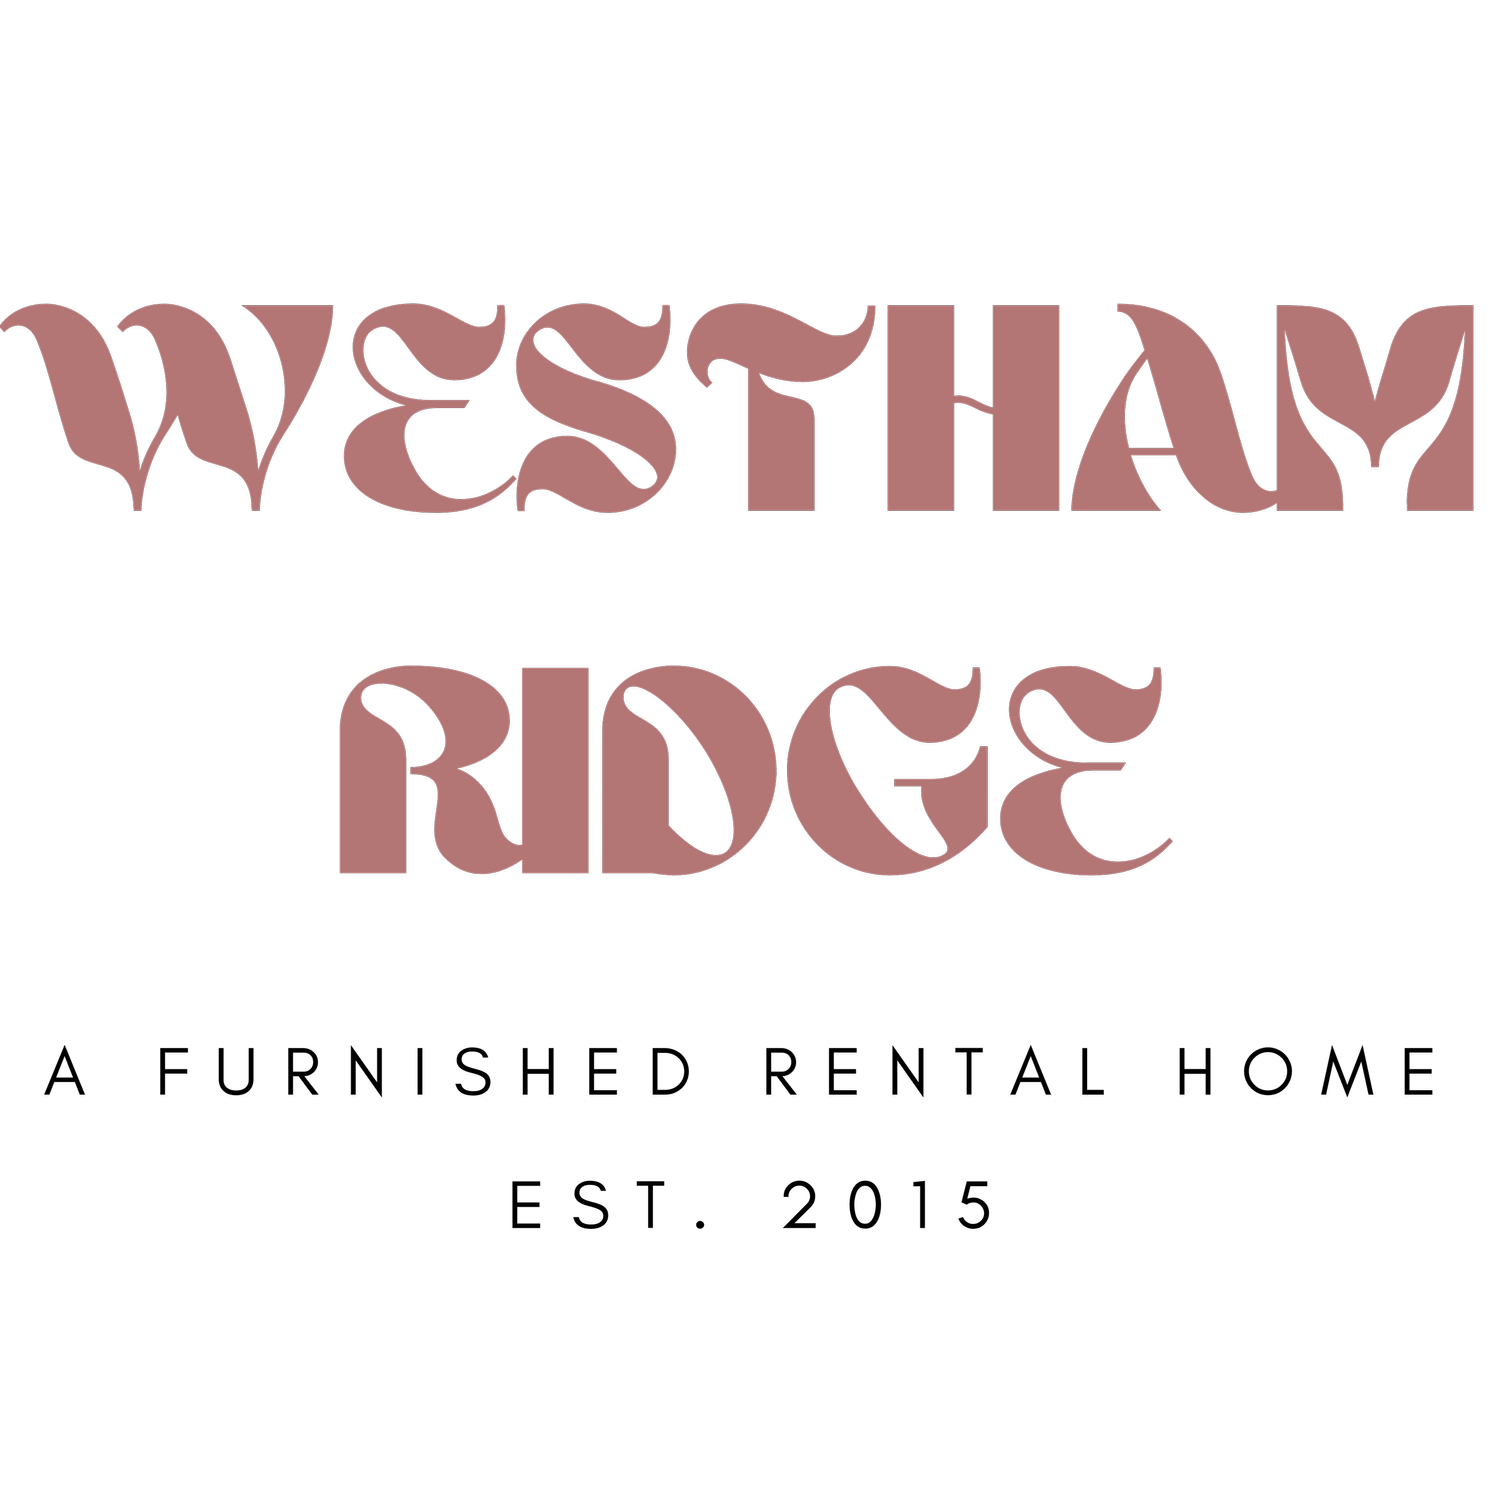 Westham Ridge Rental